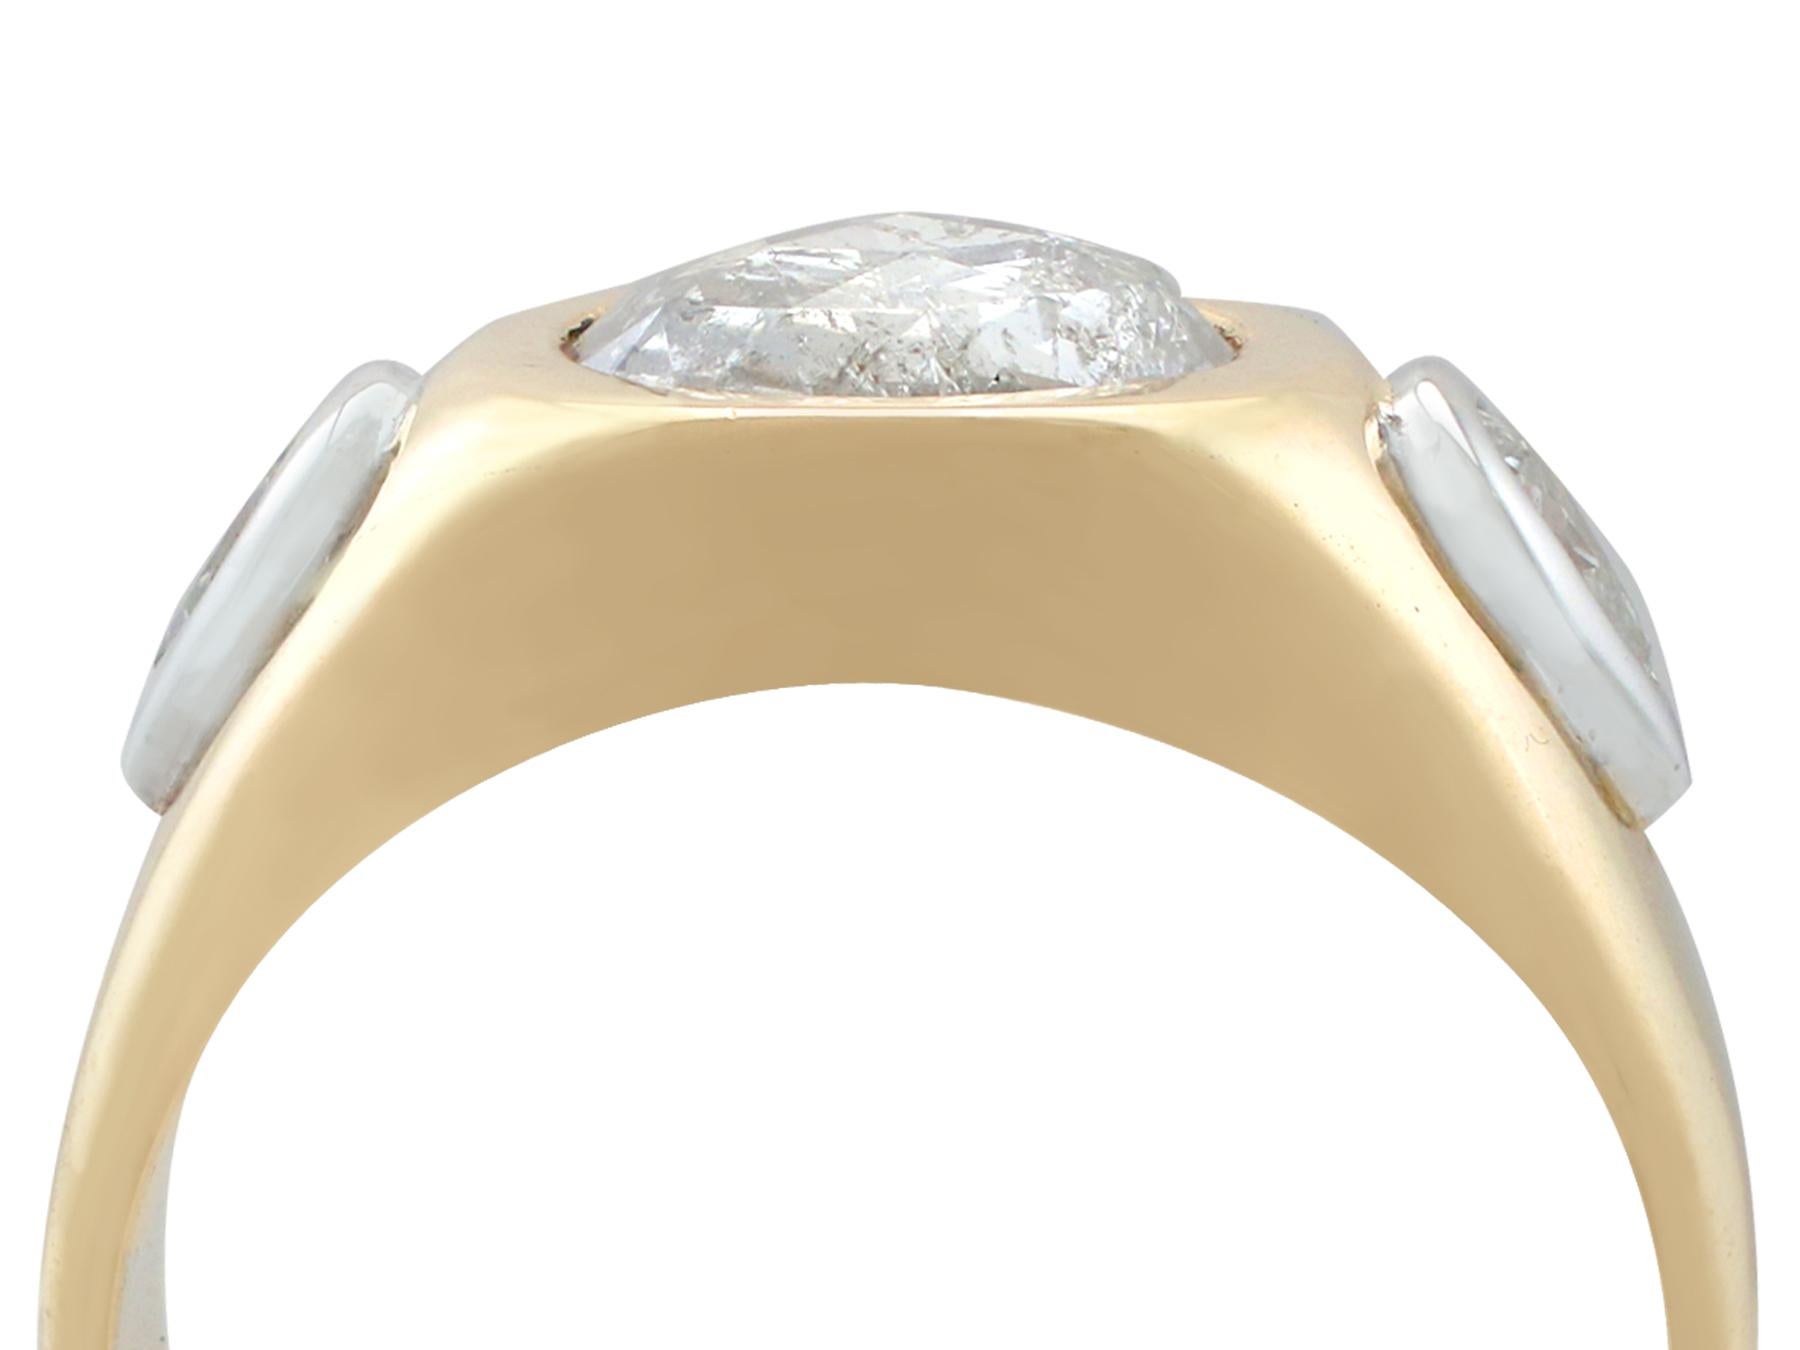 Eine beeindruckende Vintage Französisch 1,45 Ct Diamant und 18k Gelbgold, 18k Weißgold gesetzt Siegel Stil Ring; Teil unserer vielfältigen Diamant-Schmuck und Nachlass-Schmuck-Kollektionen.

Dieser atemberaubende, feine und beeindruckende